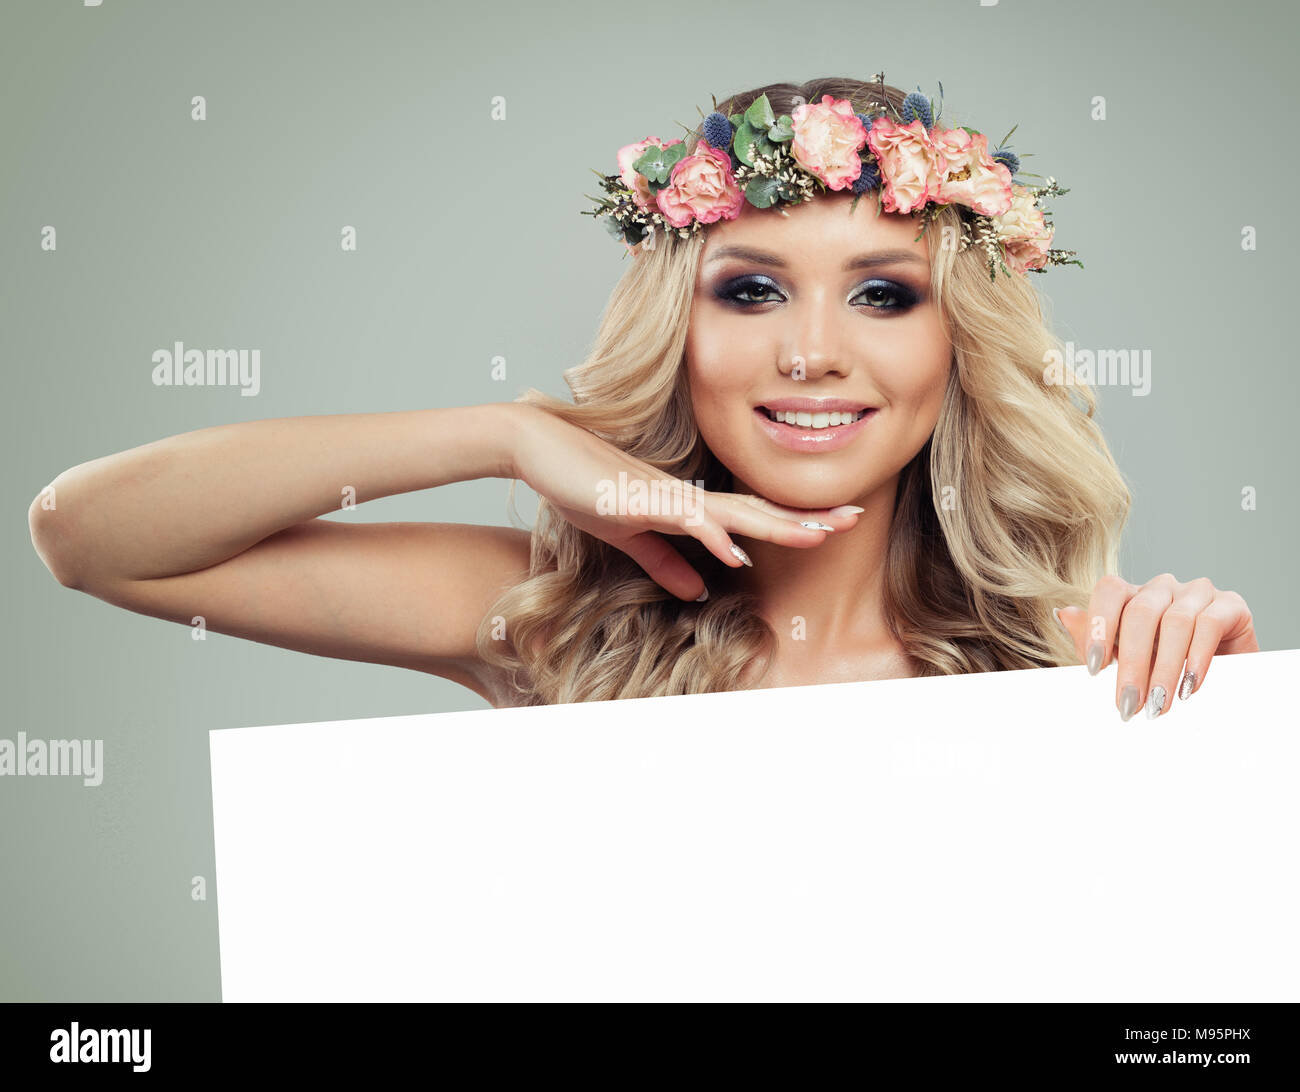 Happy Young Woman with flowers Hairstyle Holding Bannière blanche pour le texte. Blonde beauté. Modèle de mode avec de longs cheveux bouclés permanentés et maquillage parfait. S Banque D'Images